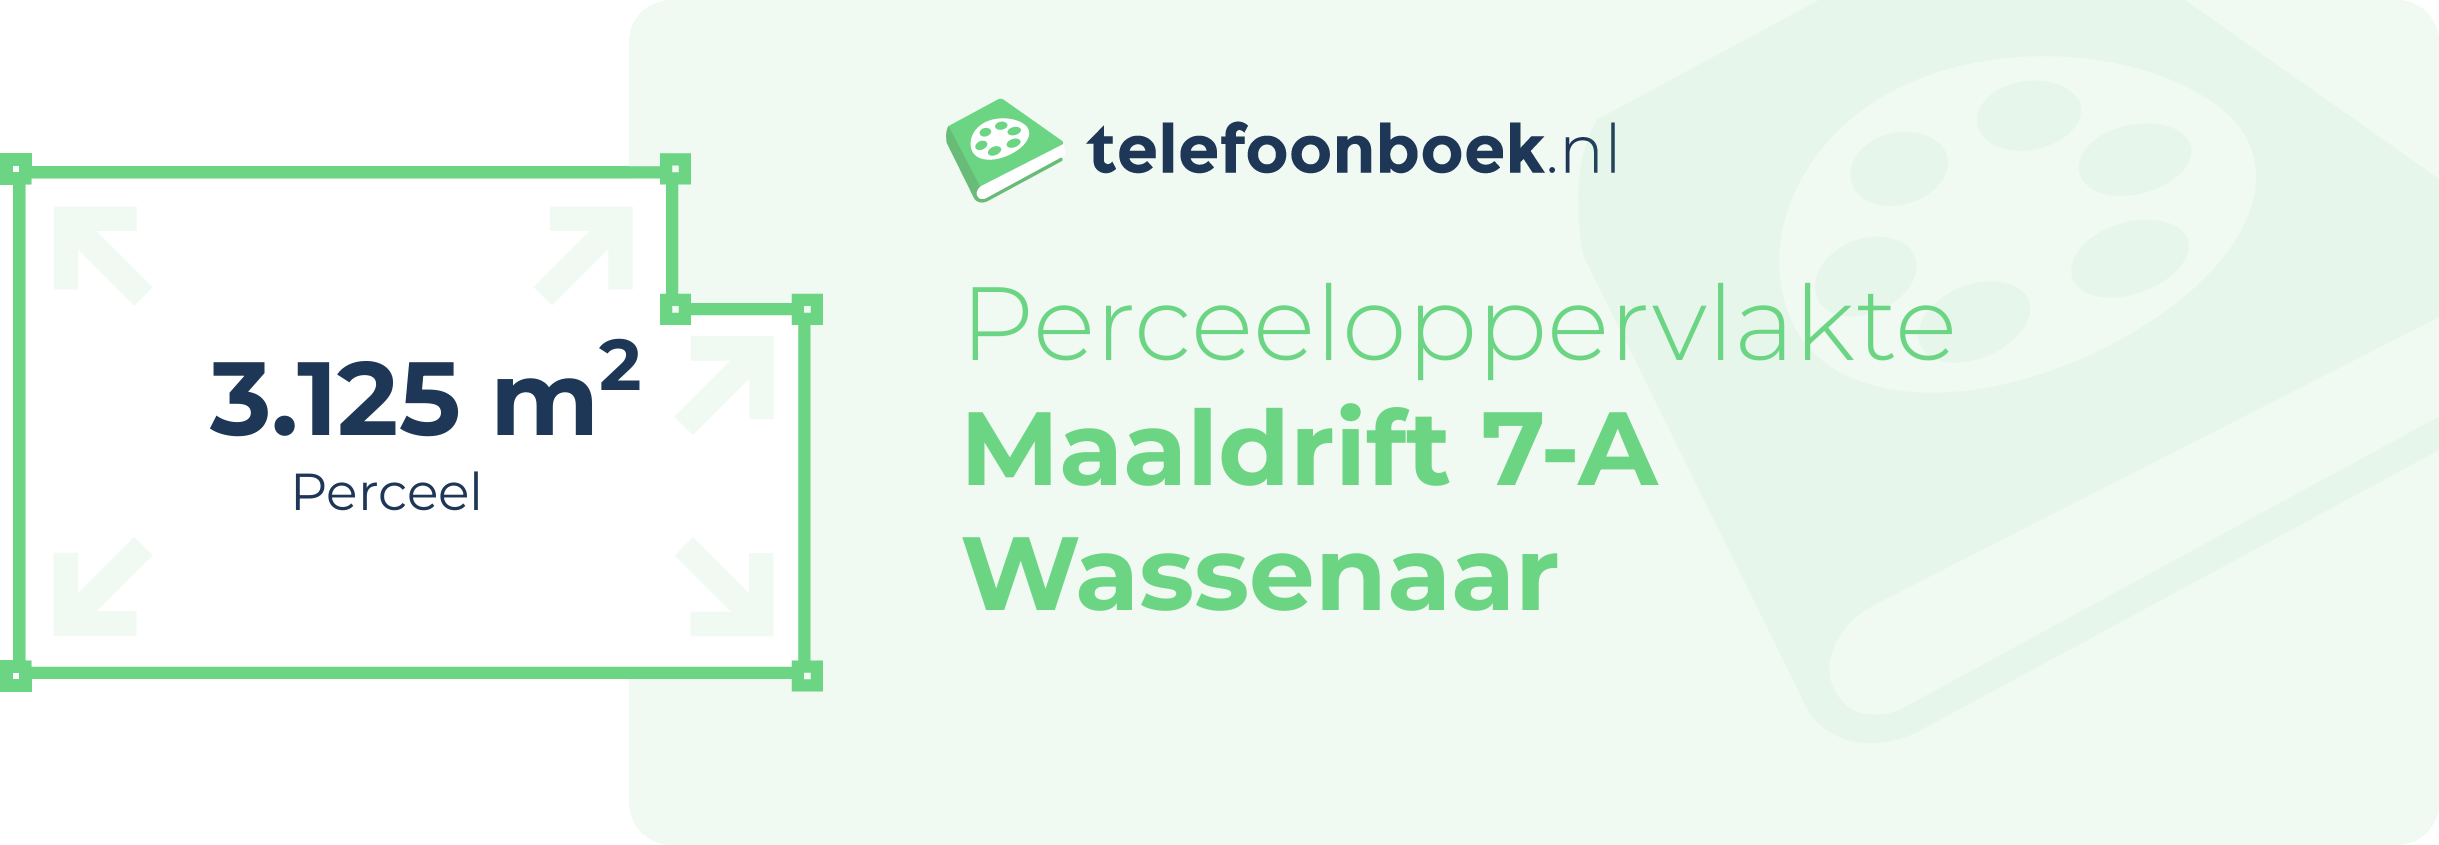 Perceeloppervlakte Maaldrift 7-A Wassenaar